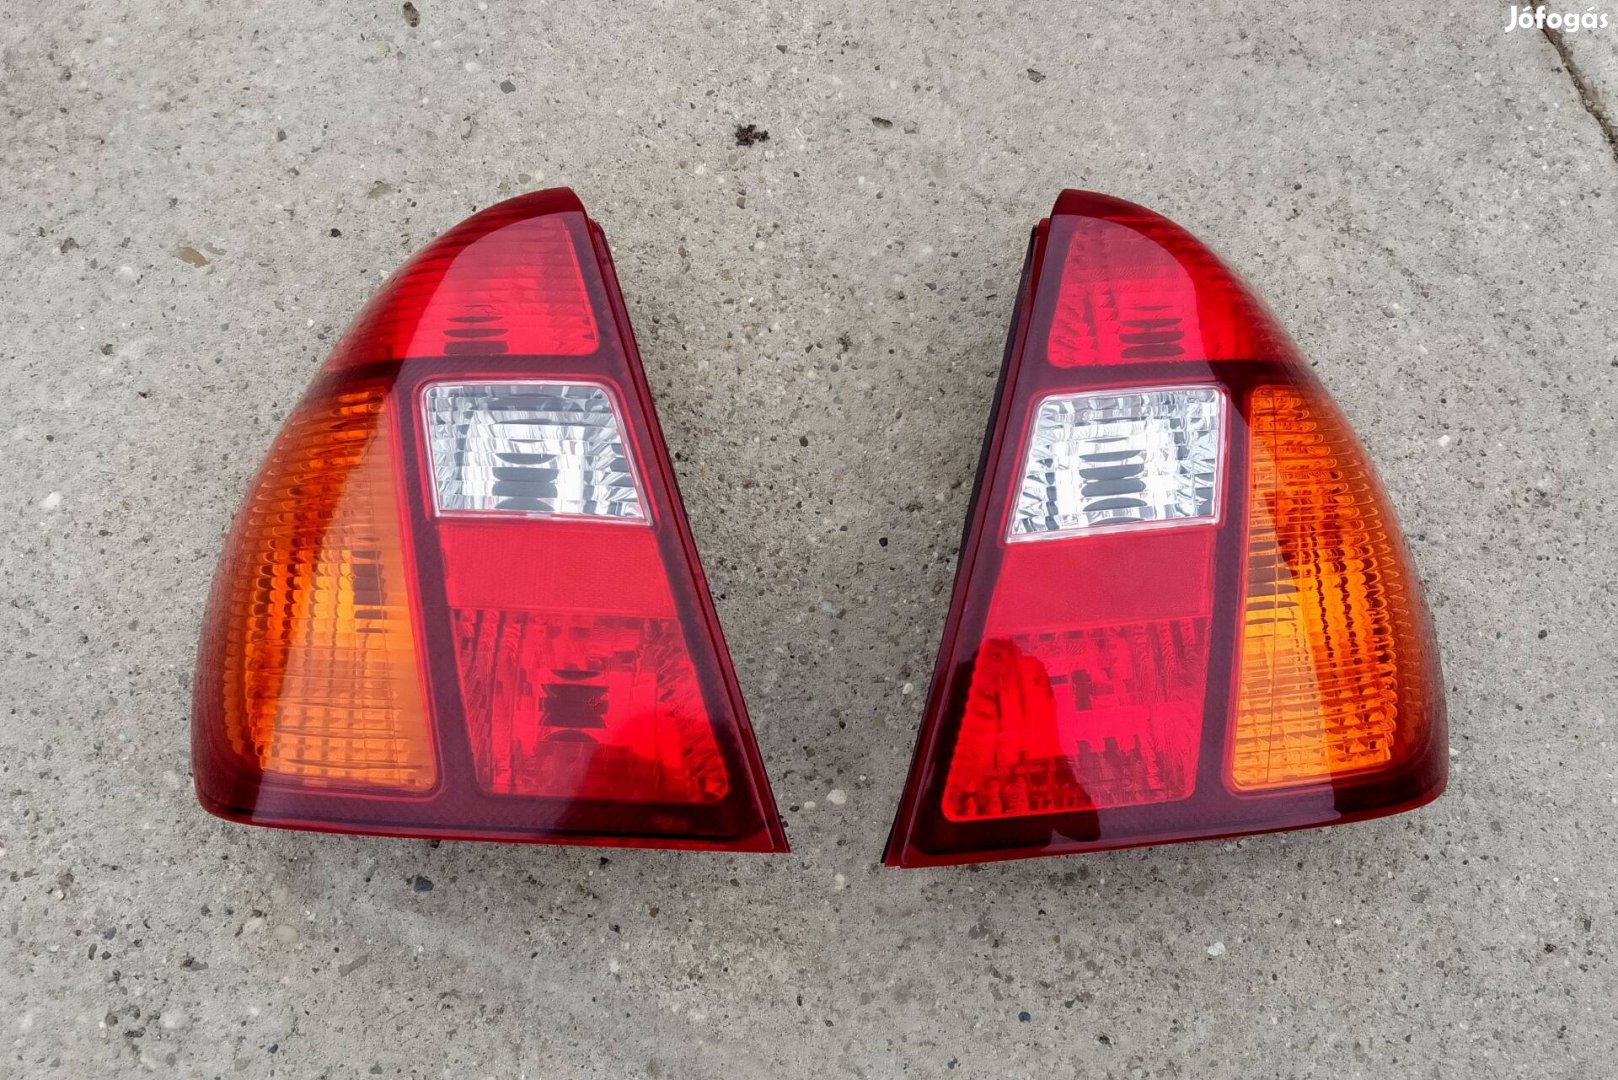 Renault Thalia, hibátlan hátsó lámpa. 7000.-/db